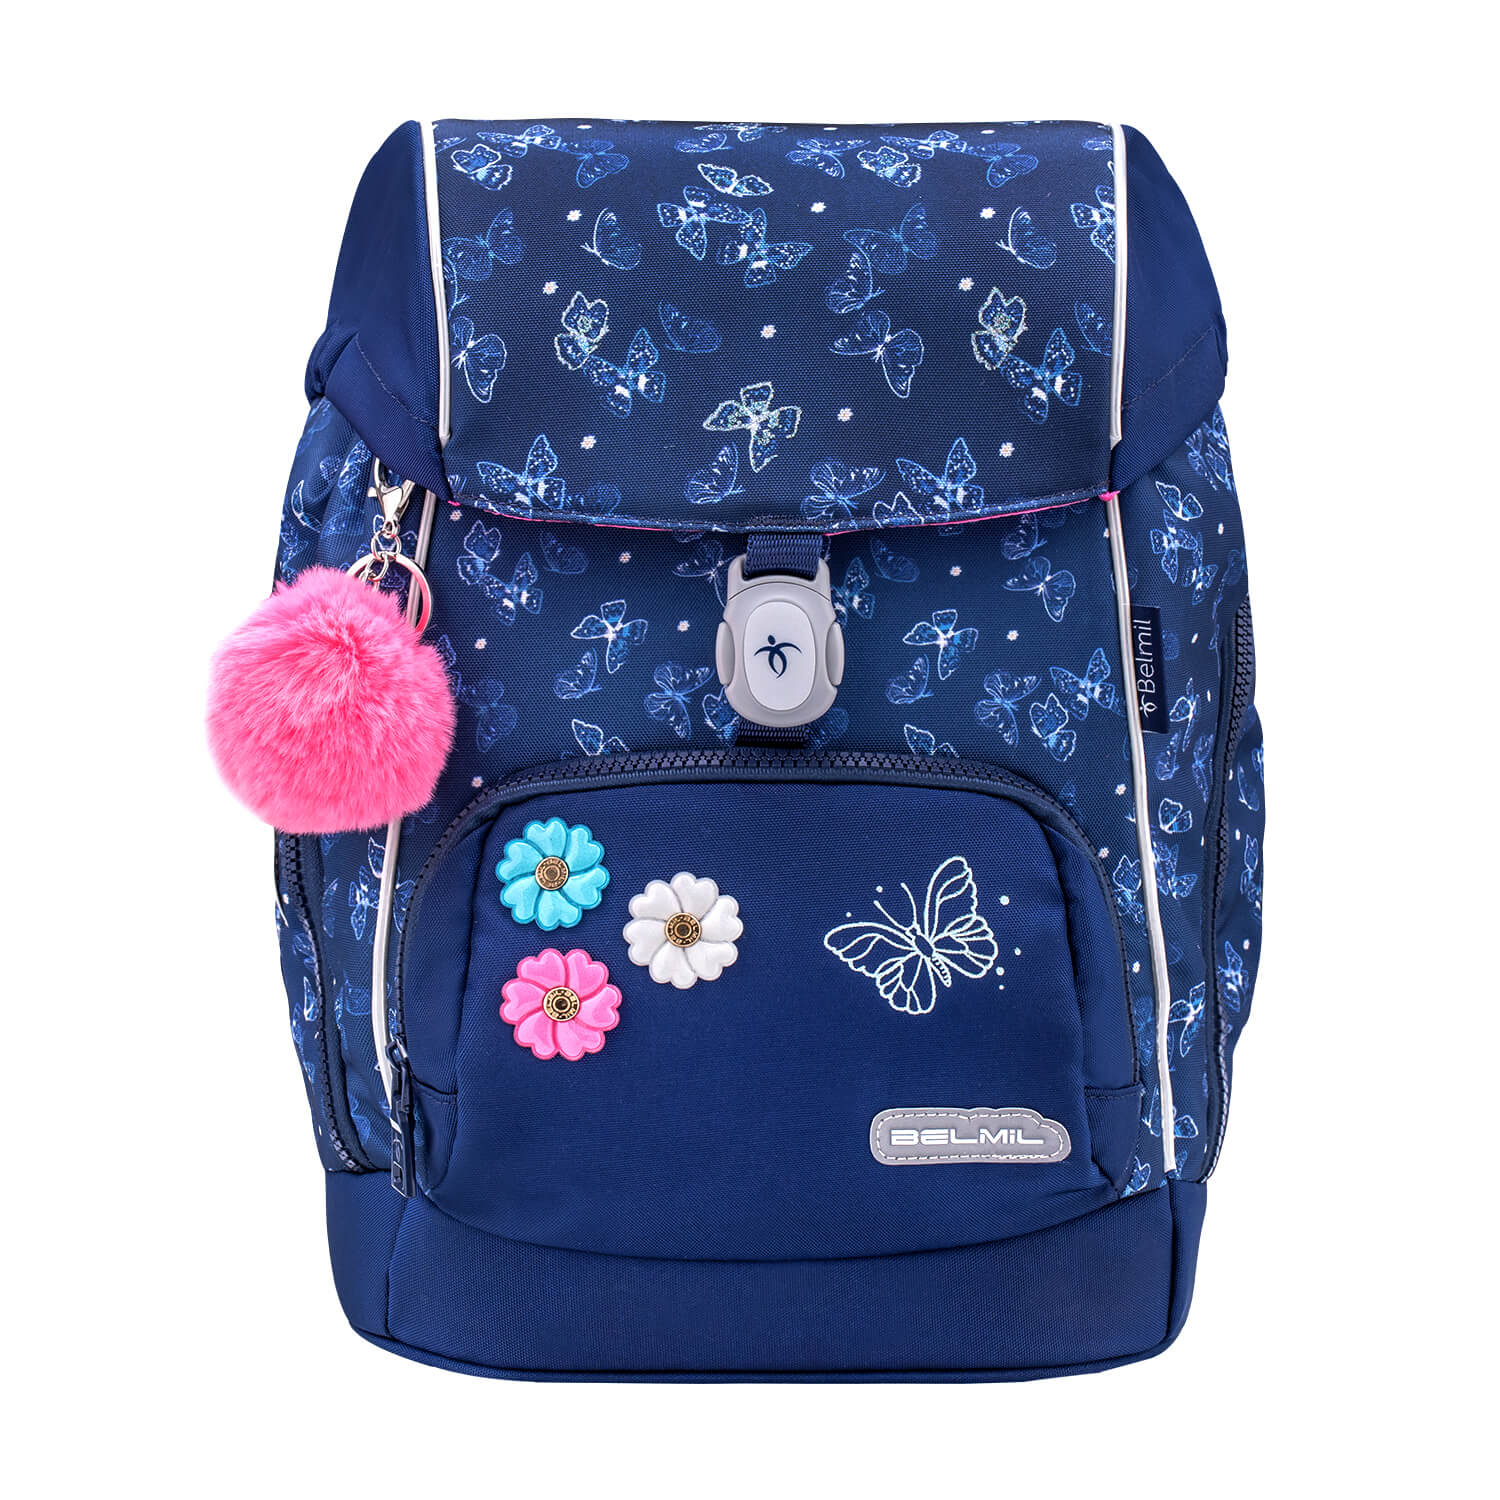 Premium Comfy Plus Sapphire Schoolbag set 5pcs.